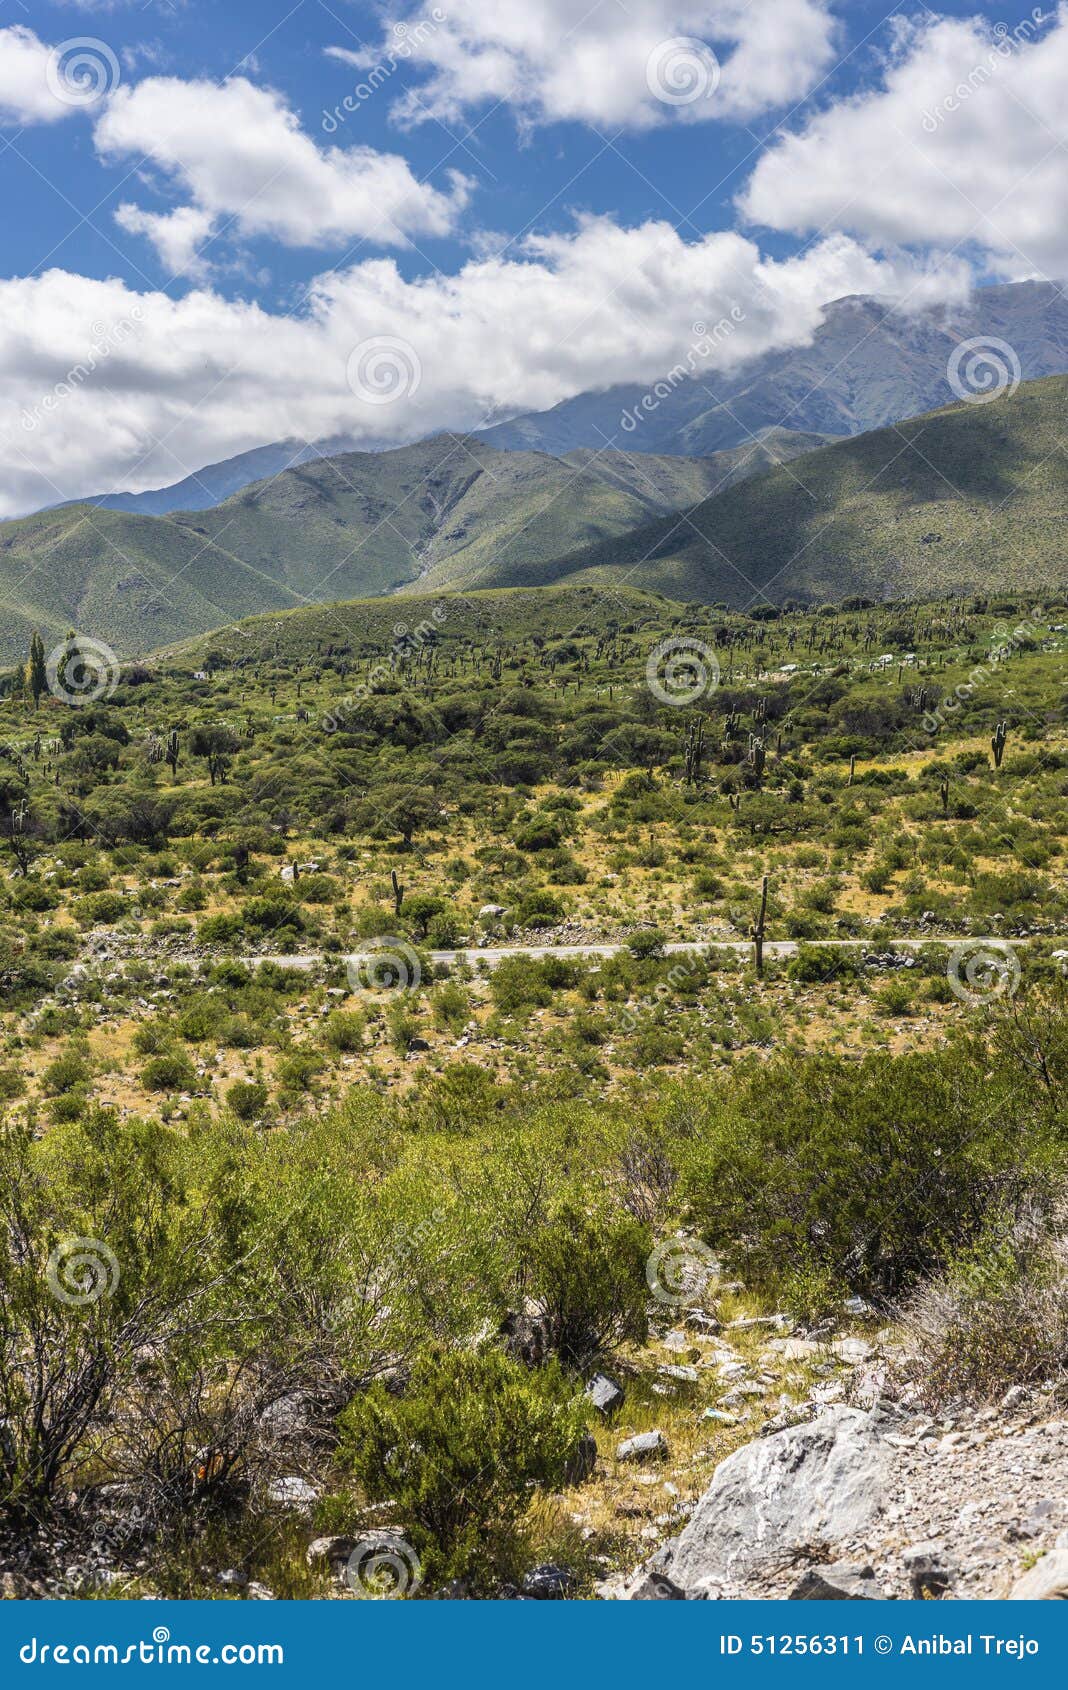 calchaqui valley in tucuman, argentina